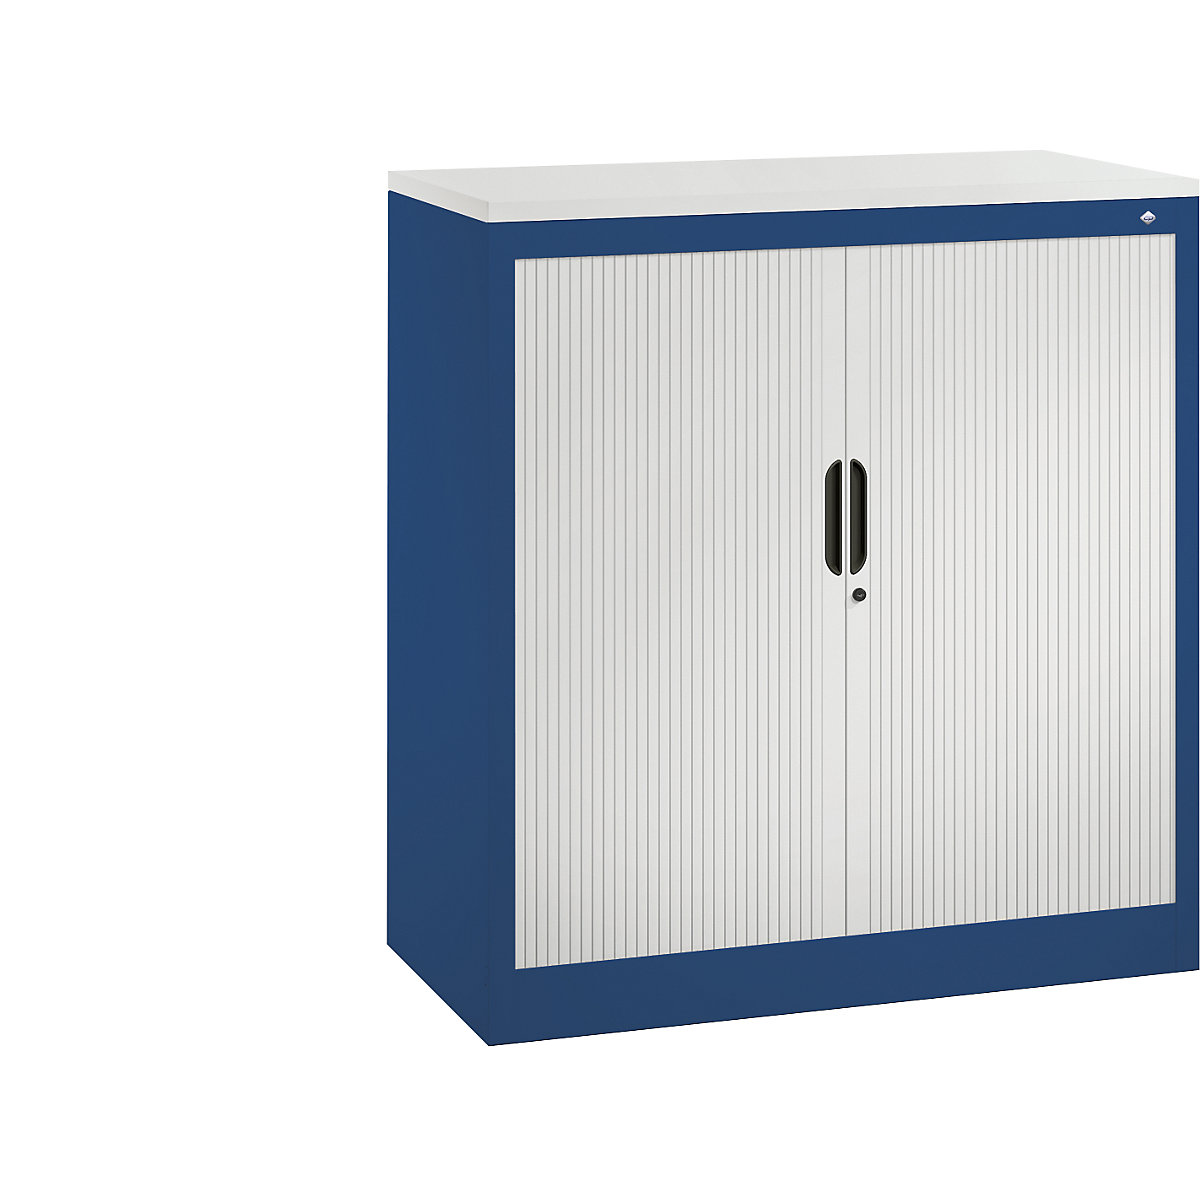 Roller shutter cupboard with horizontal shutter – C+P, HxWxD 1030 x 1000 x 420 mm, 2 shelves, 2.5 file heights, gentian blue / light grey-4